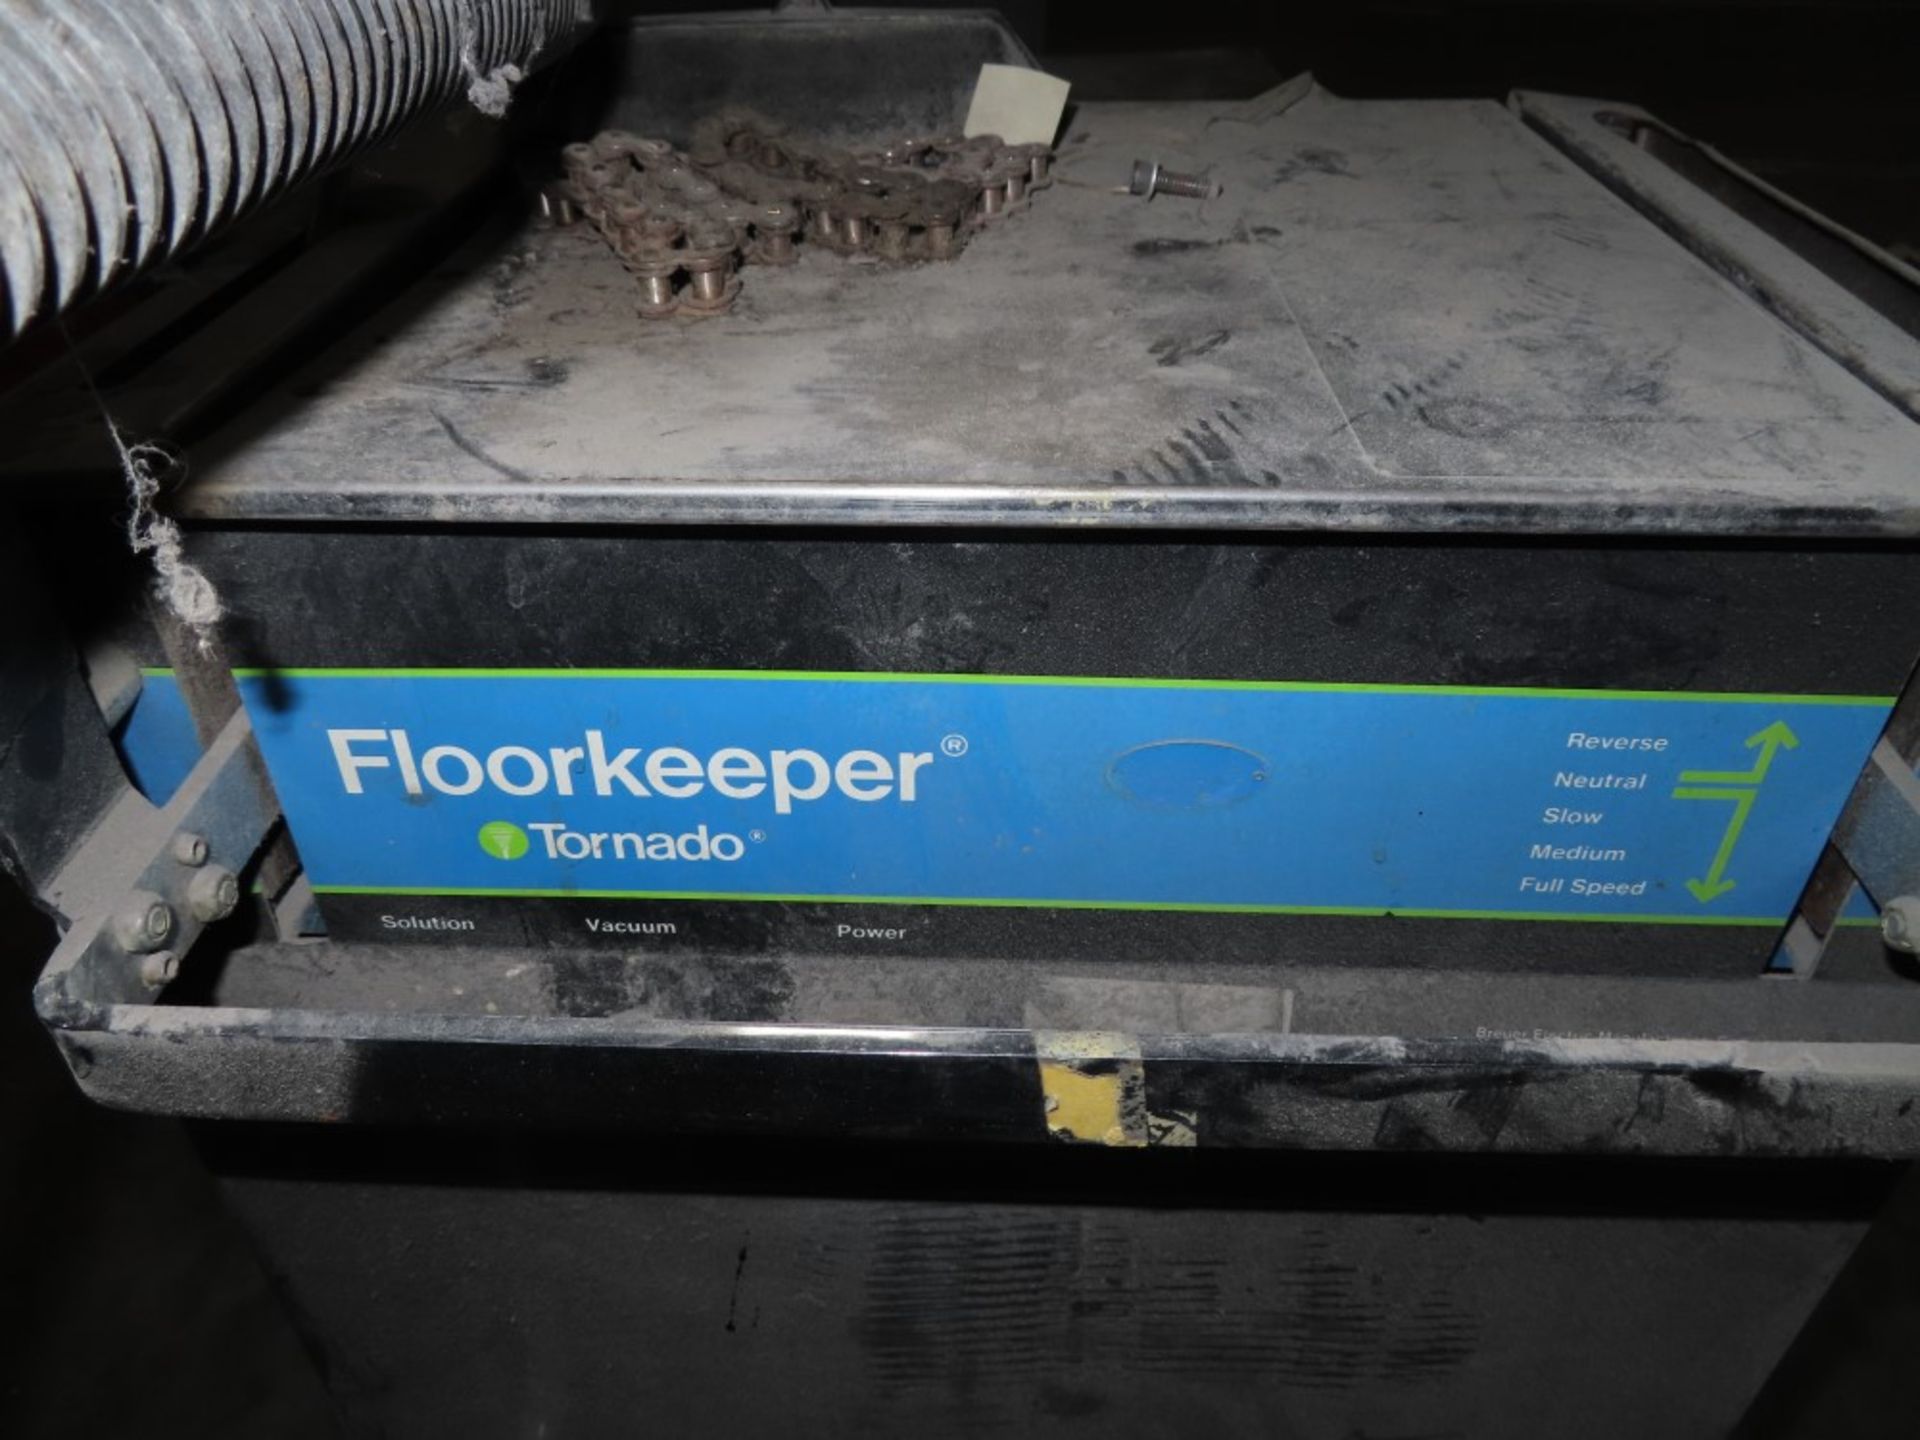 TORNADO FLOOR KEEPER FLOOR SCRUBBER - Image 3 of 3